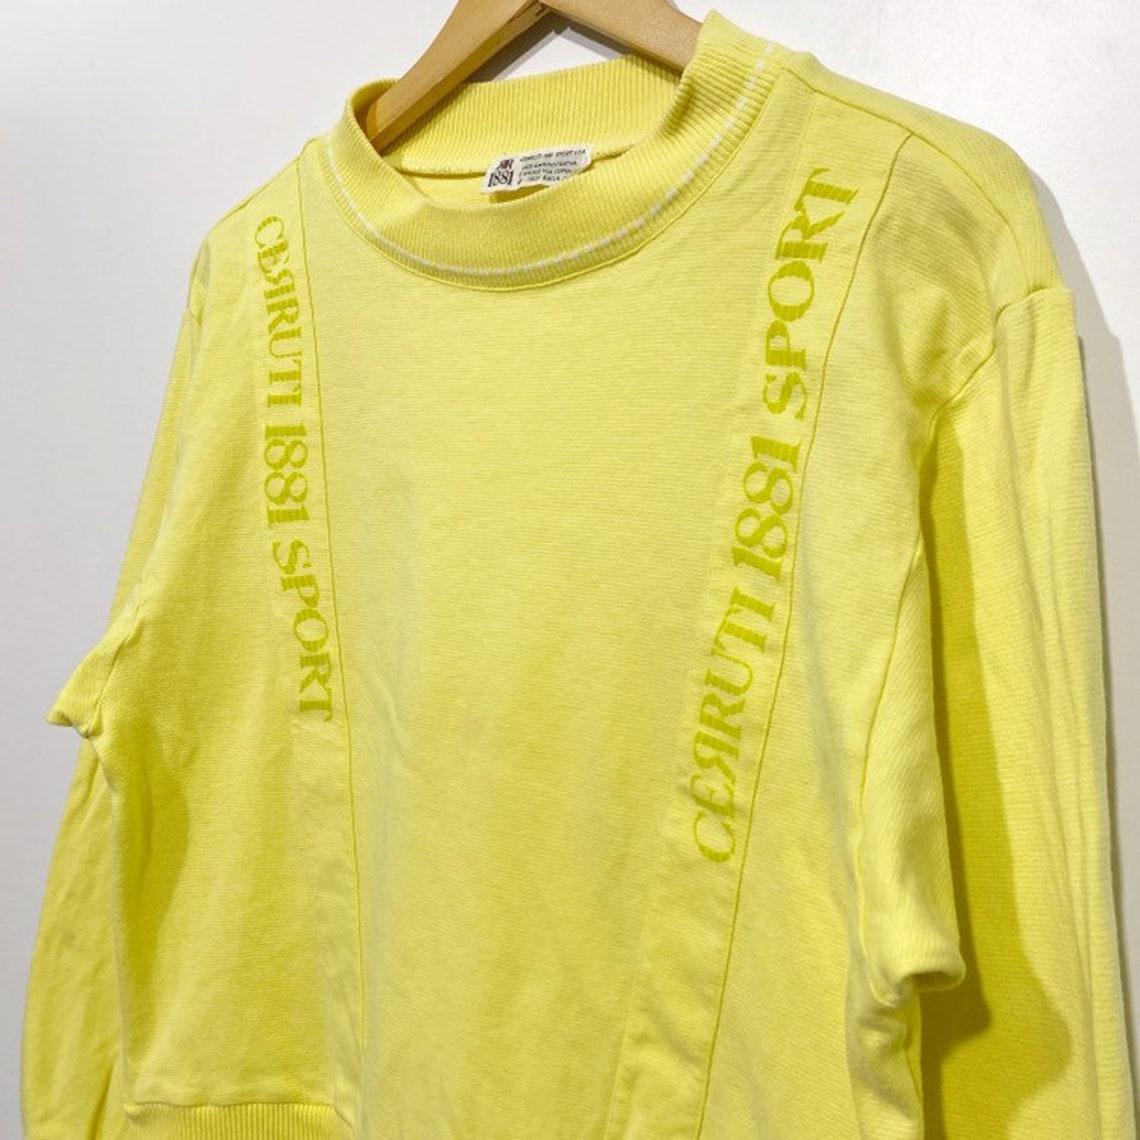 Vintage Cerruti italy Sweatshirt Pullover jumper | Etsy